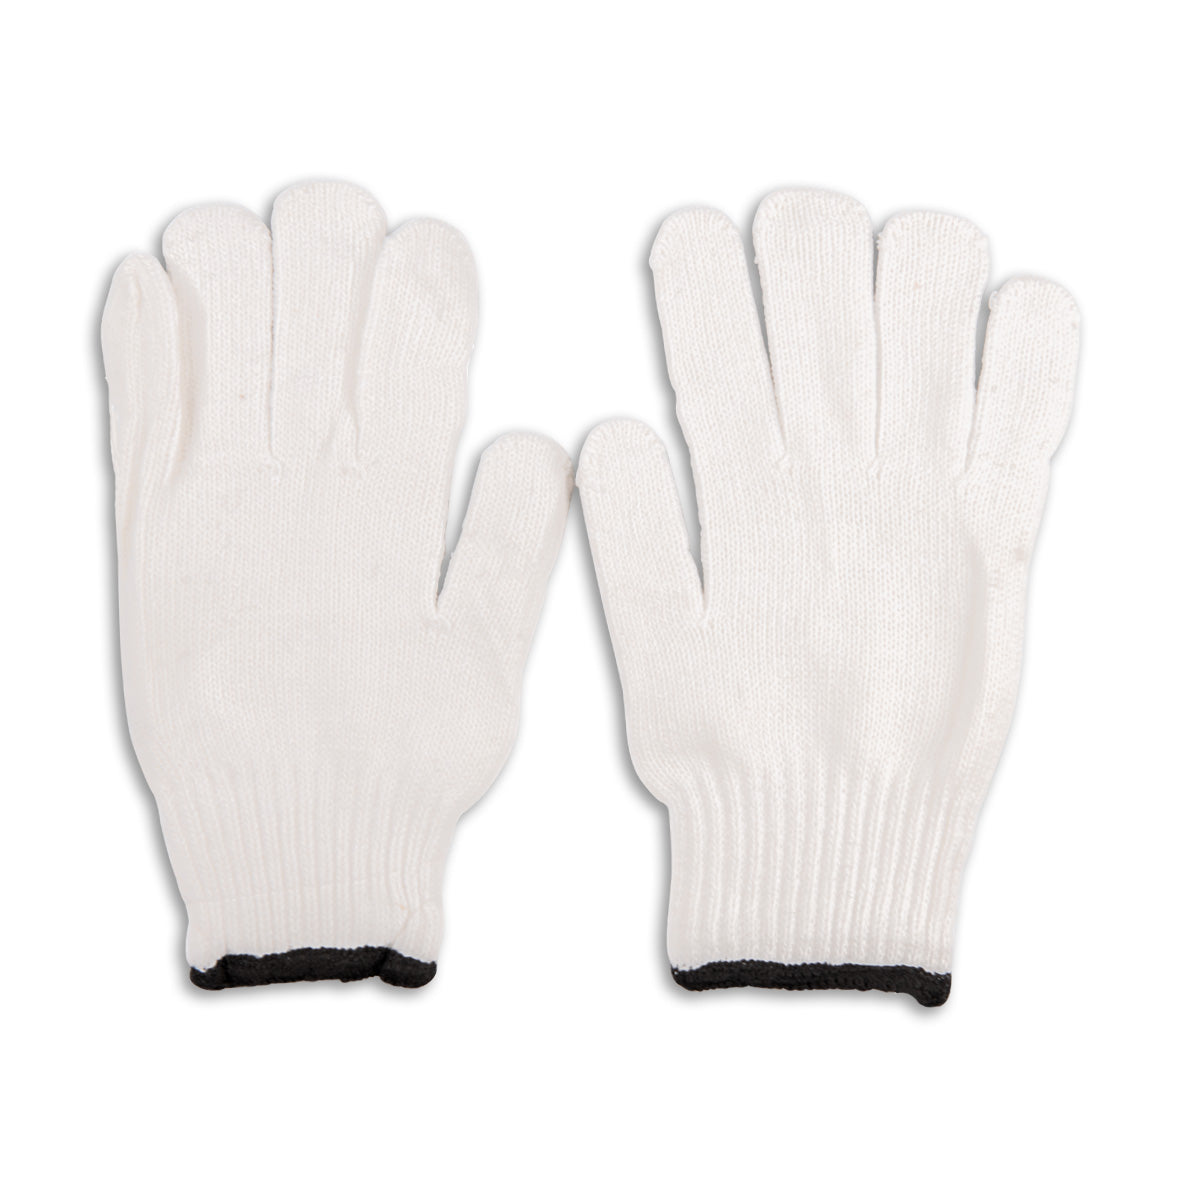 Knit Work Gloves